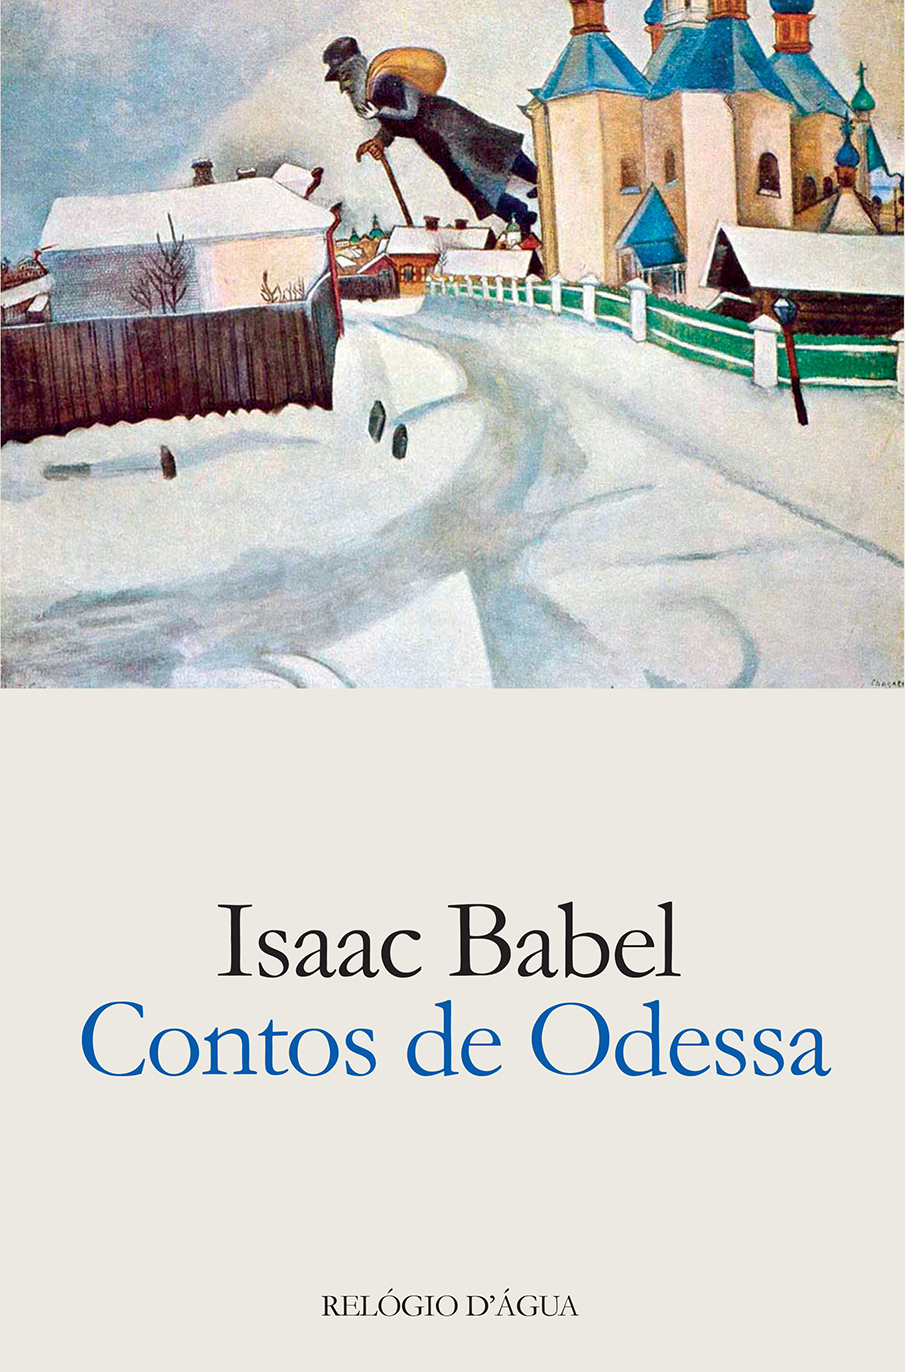 O Exercito De Cavalaria by Isaac Bábel